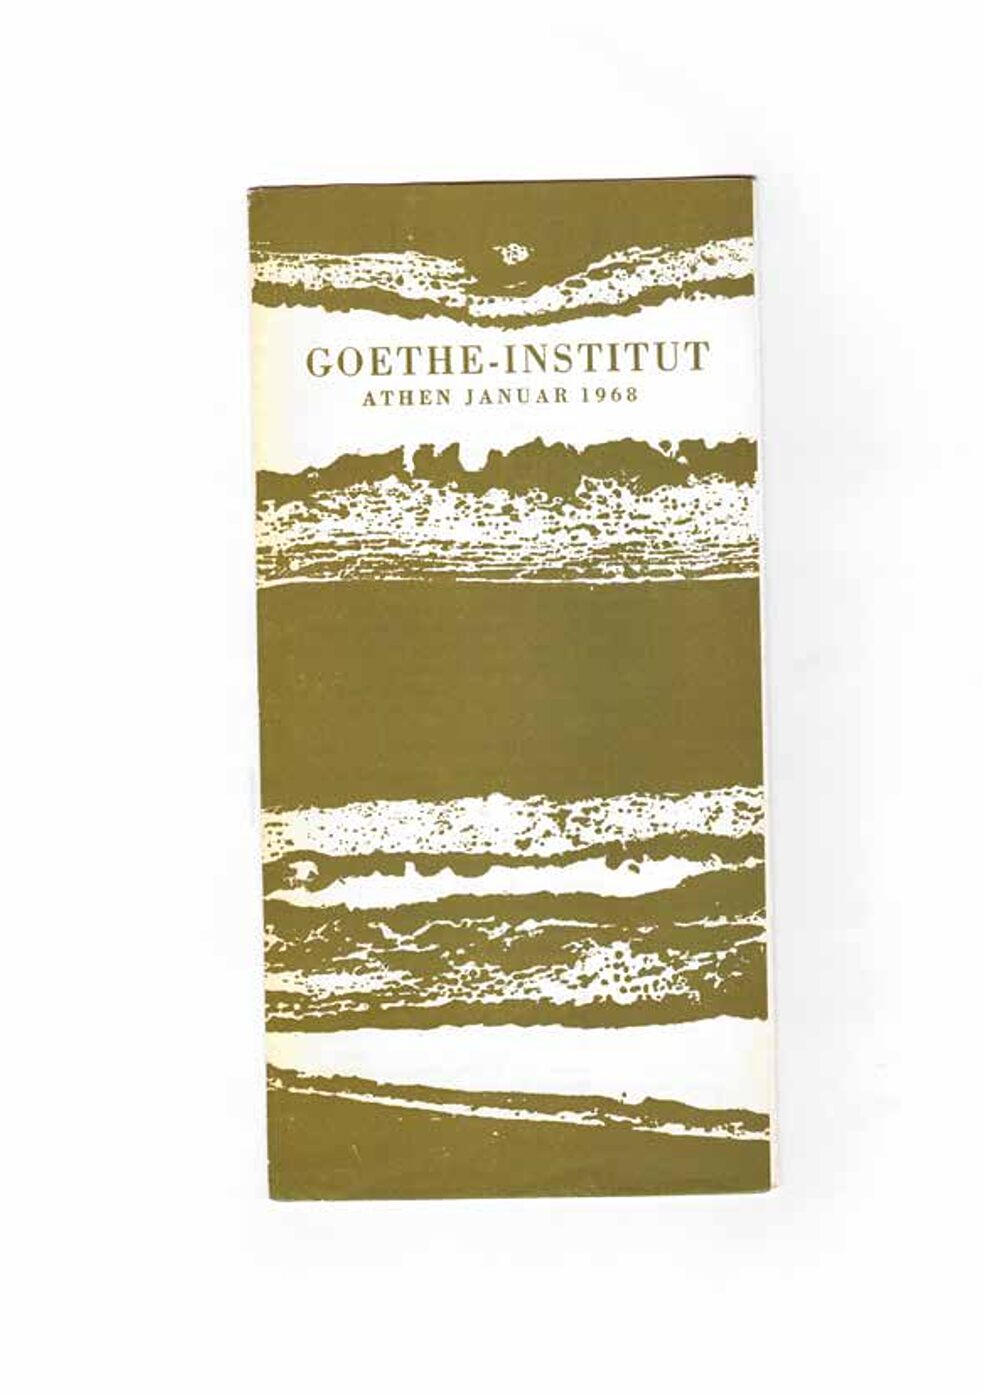 Εξώφυλλο προγράμματος του Goethe-Institut Athen, Ιανουάριος 1968.